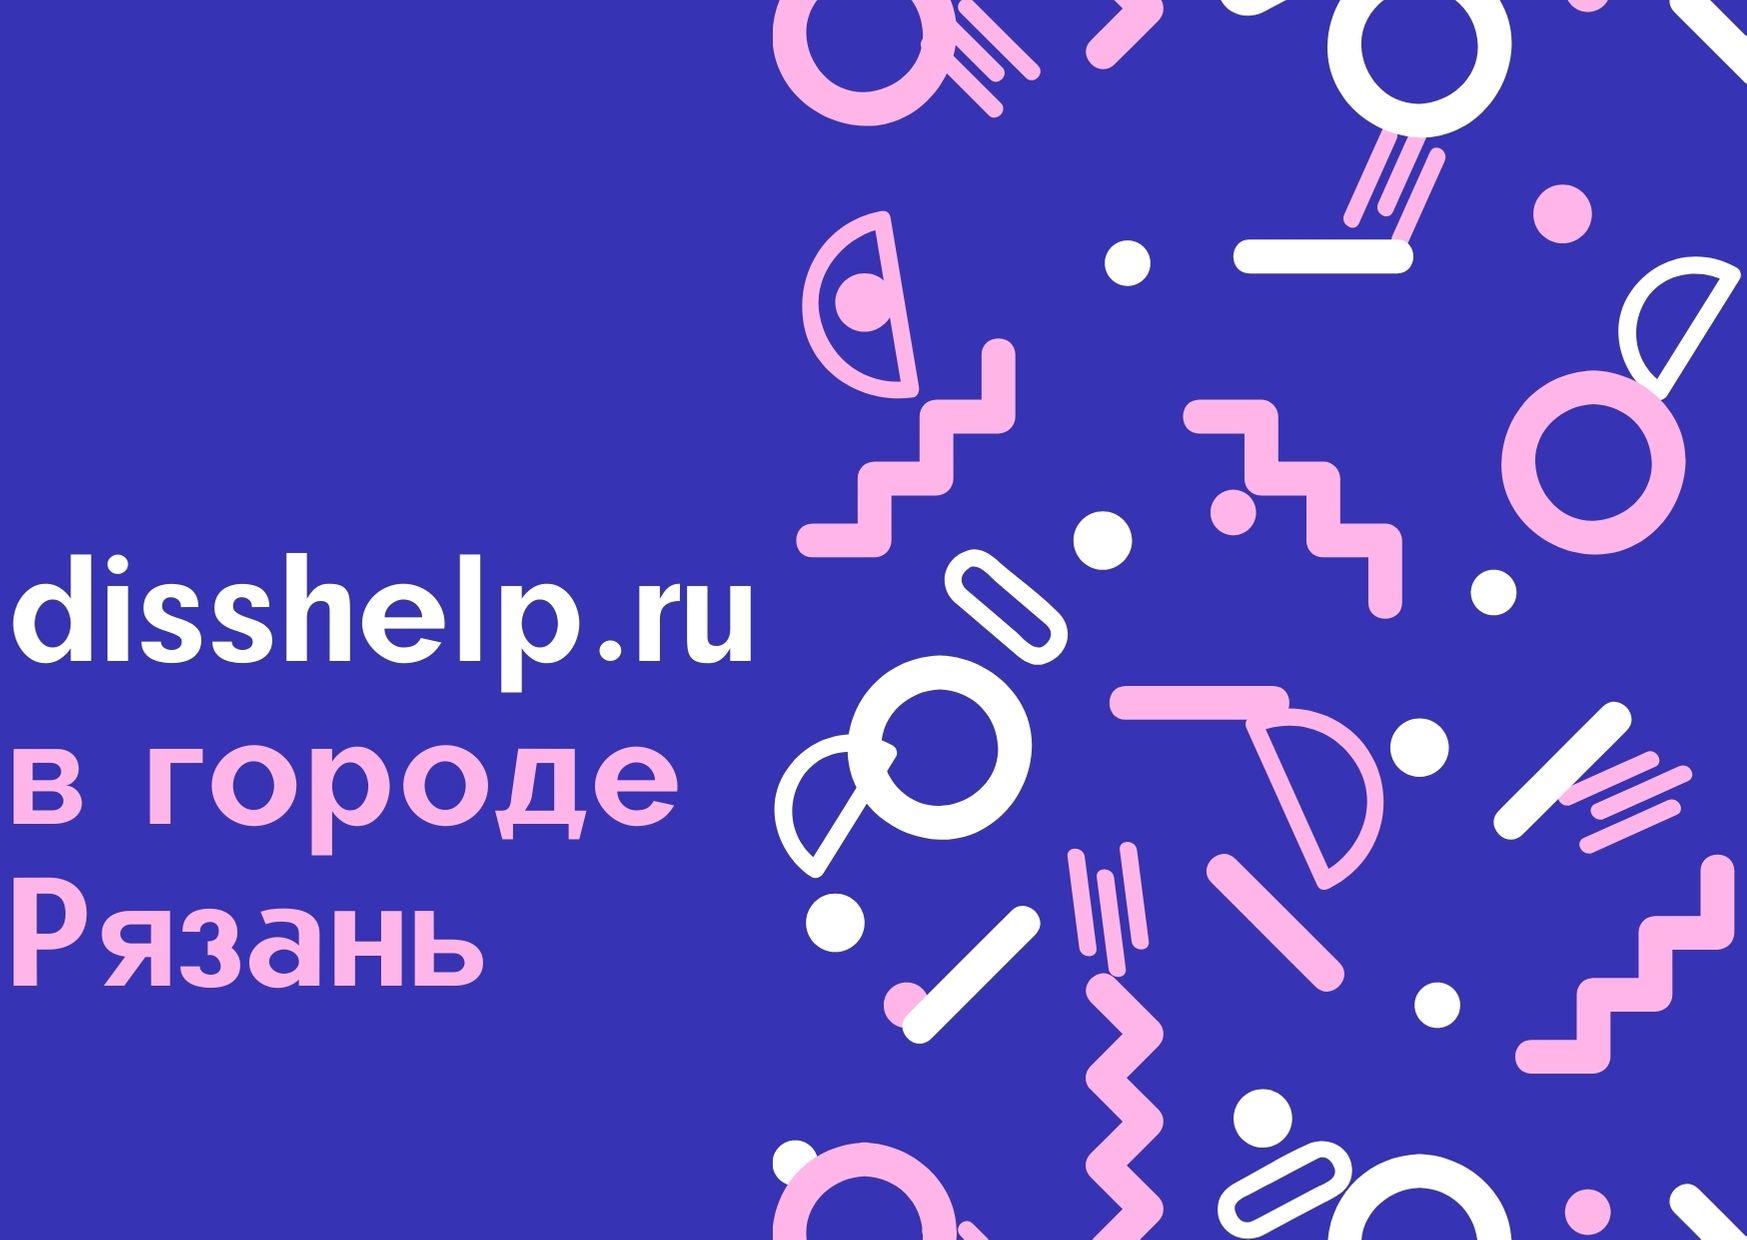 disshelp.ru в городе Рязань